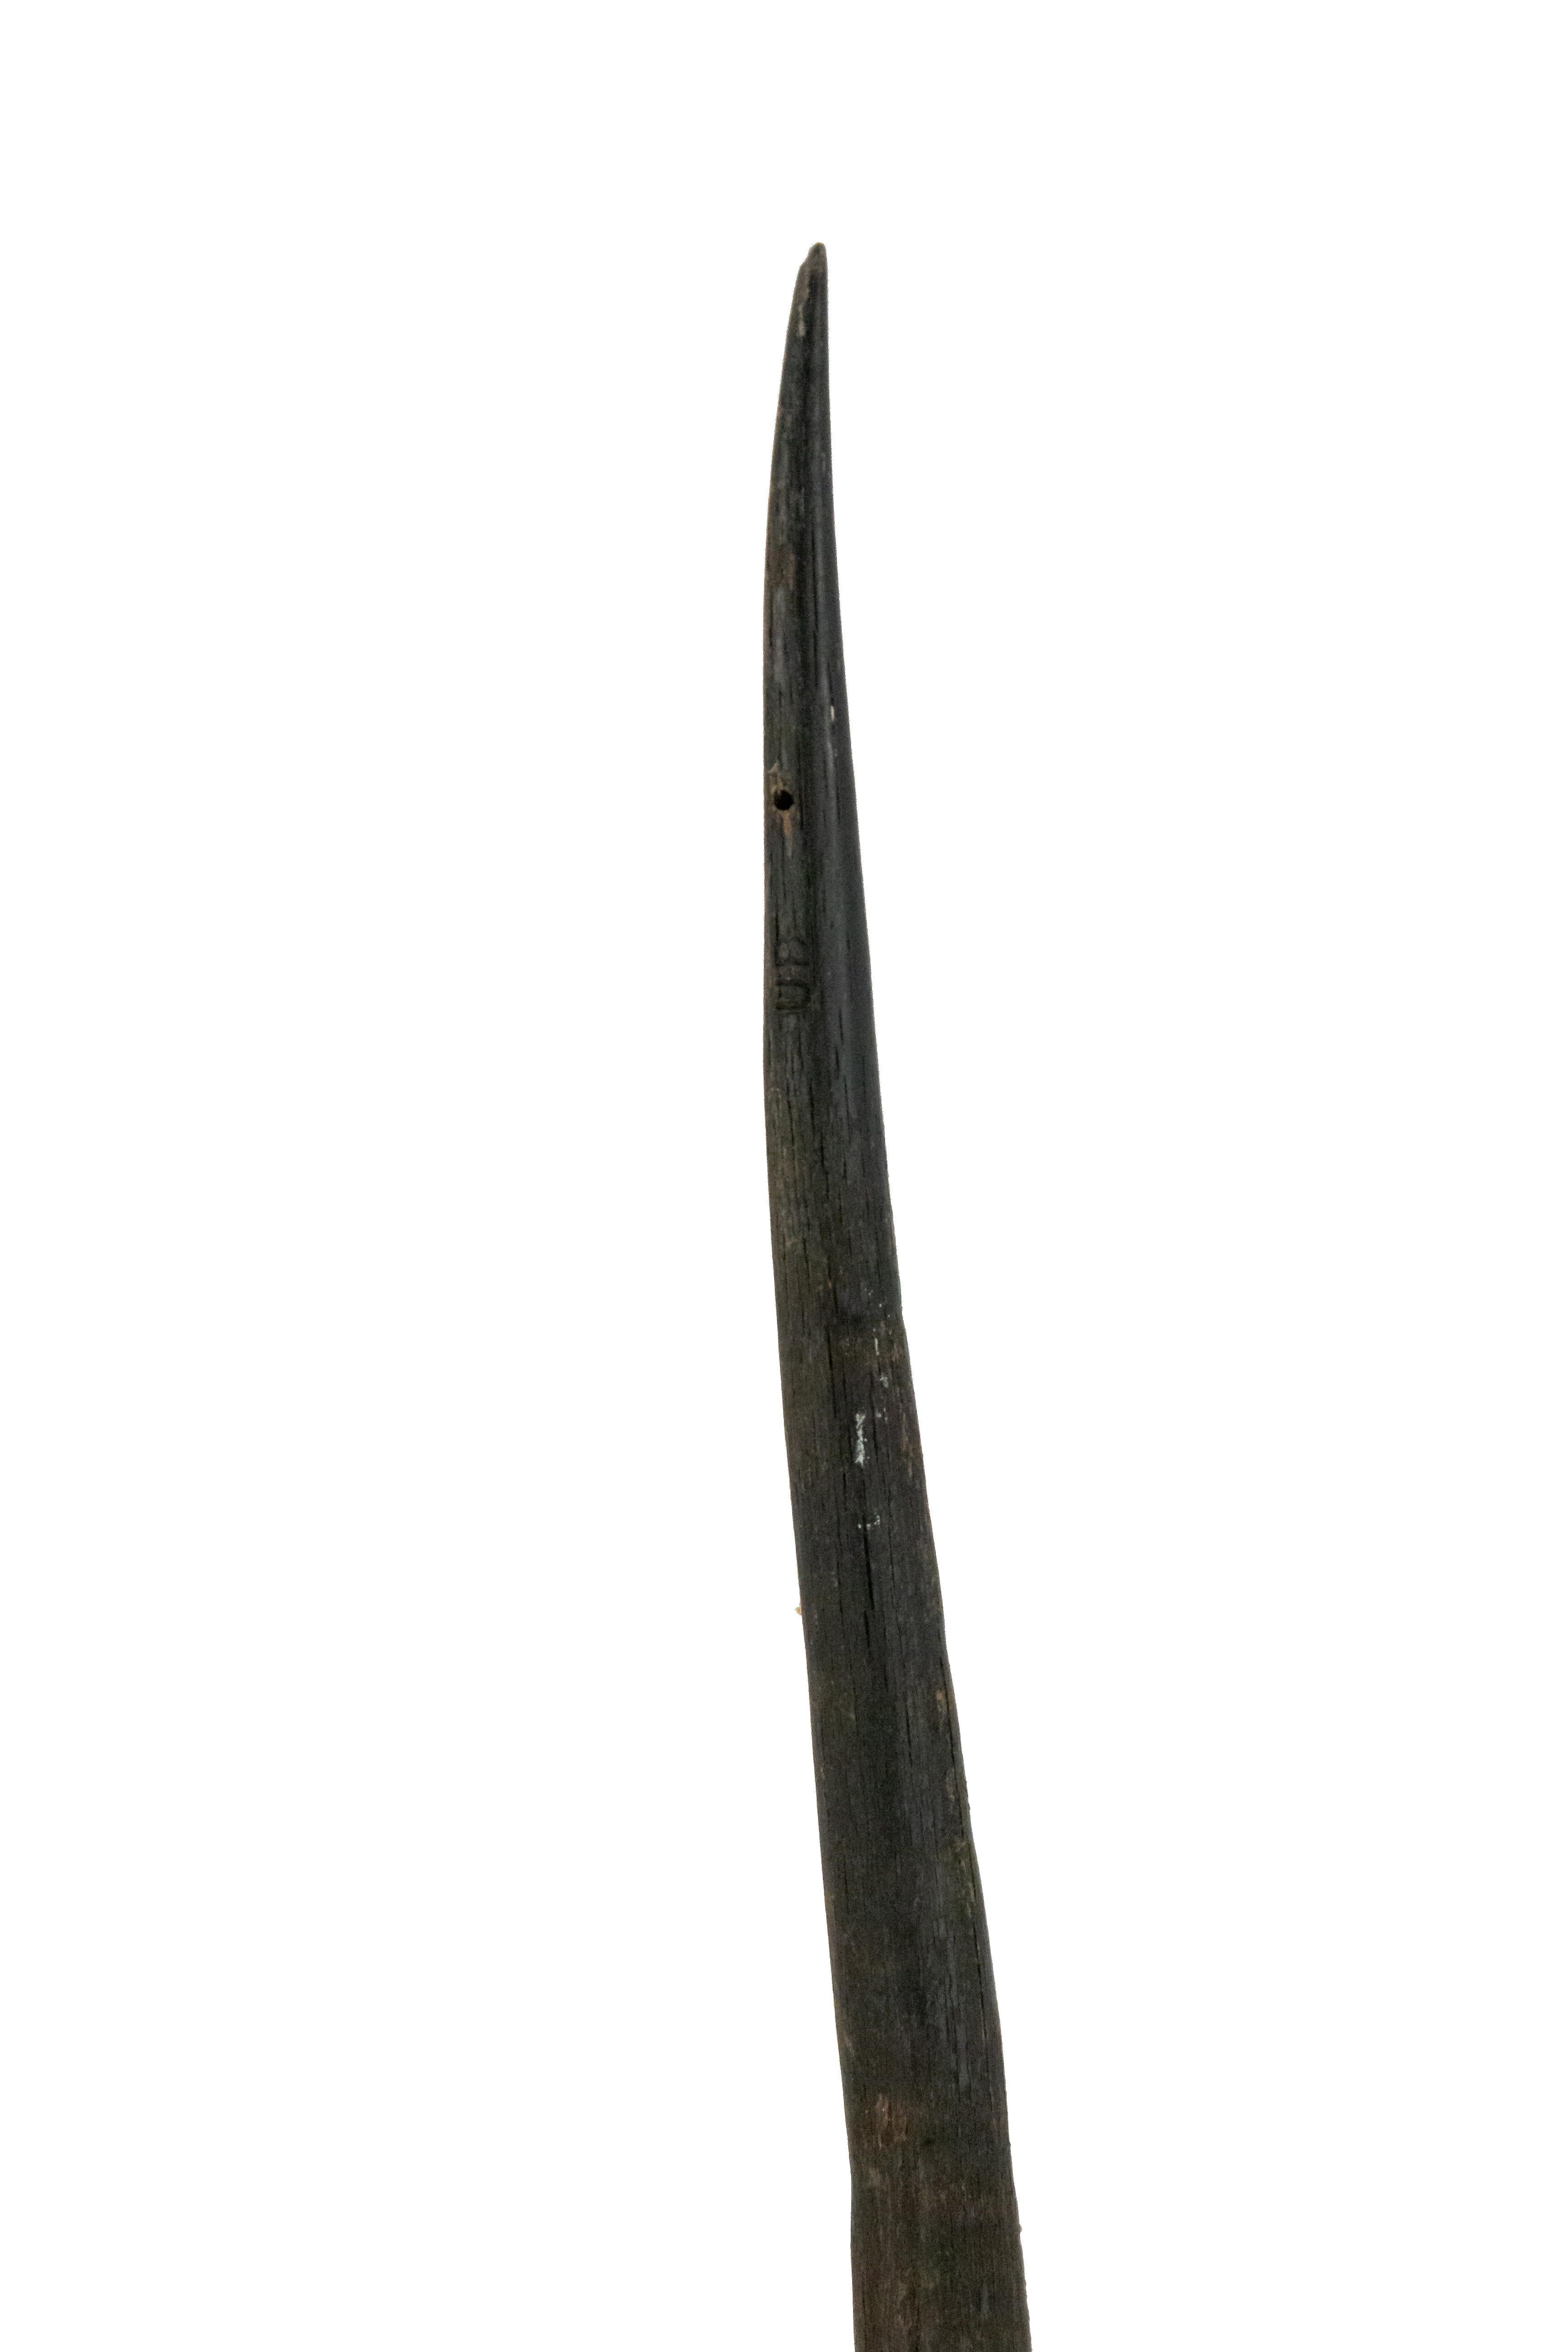 Tribal Decorative Antelope Horn Brush For Sale